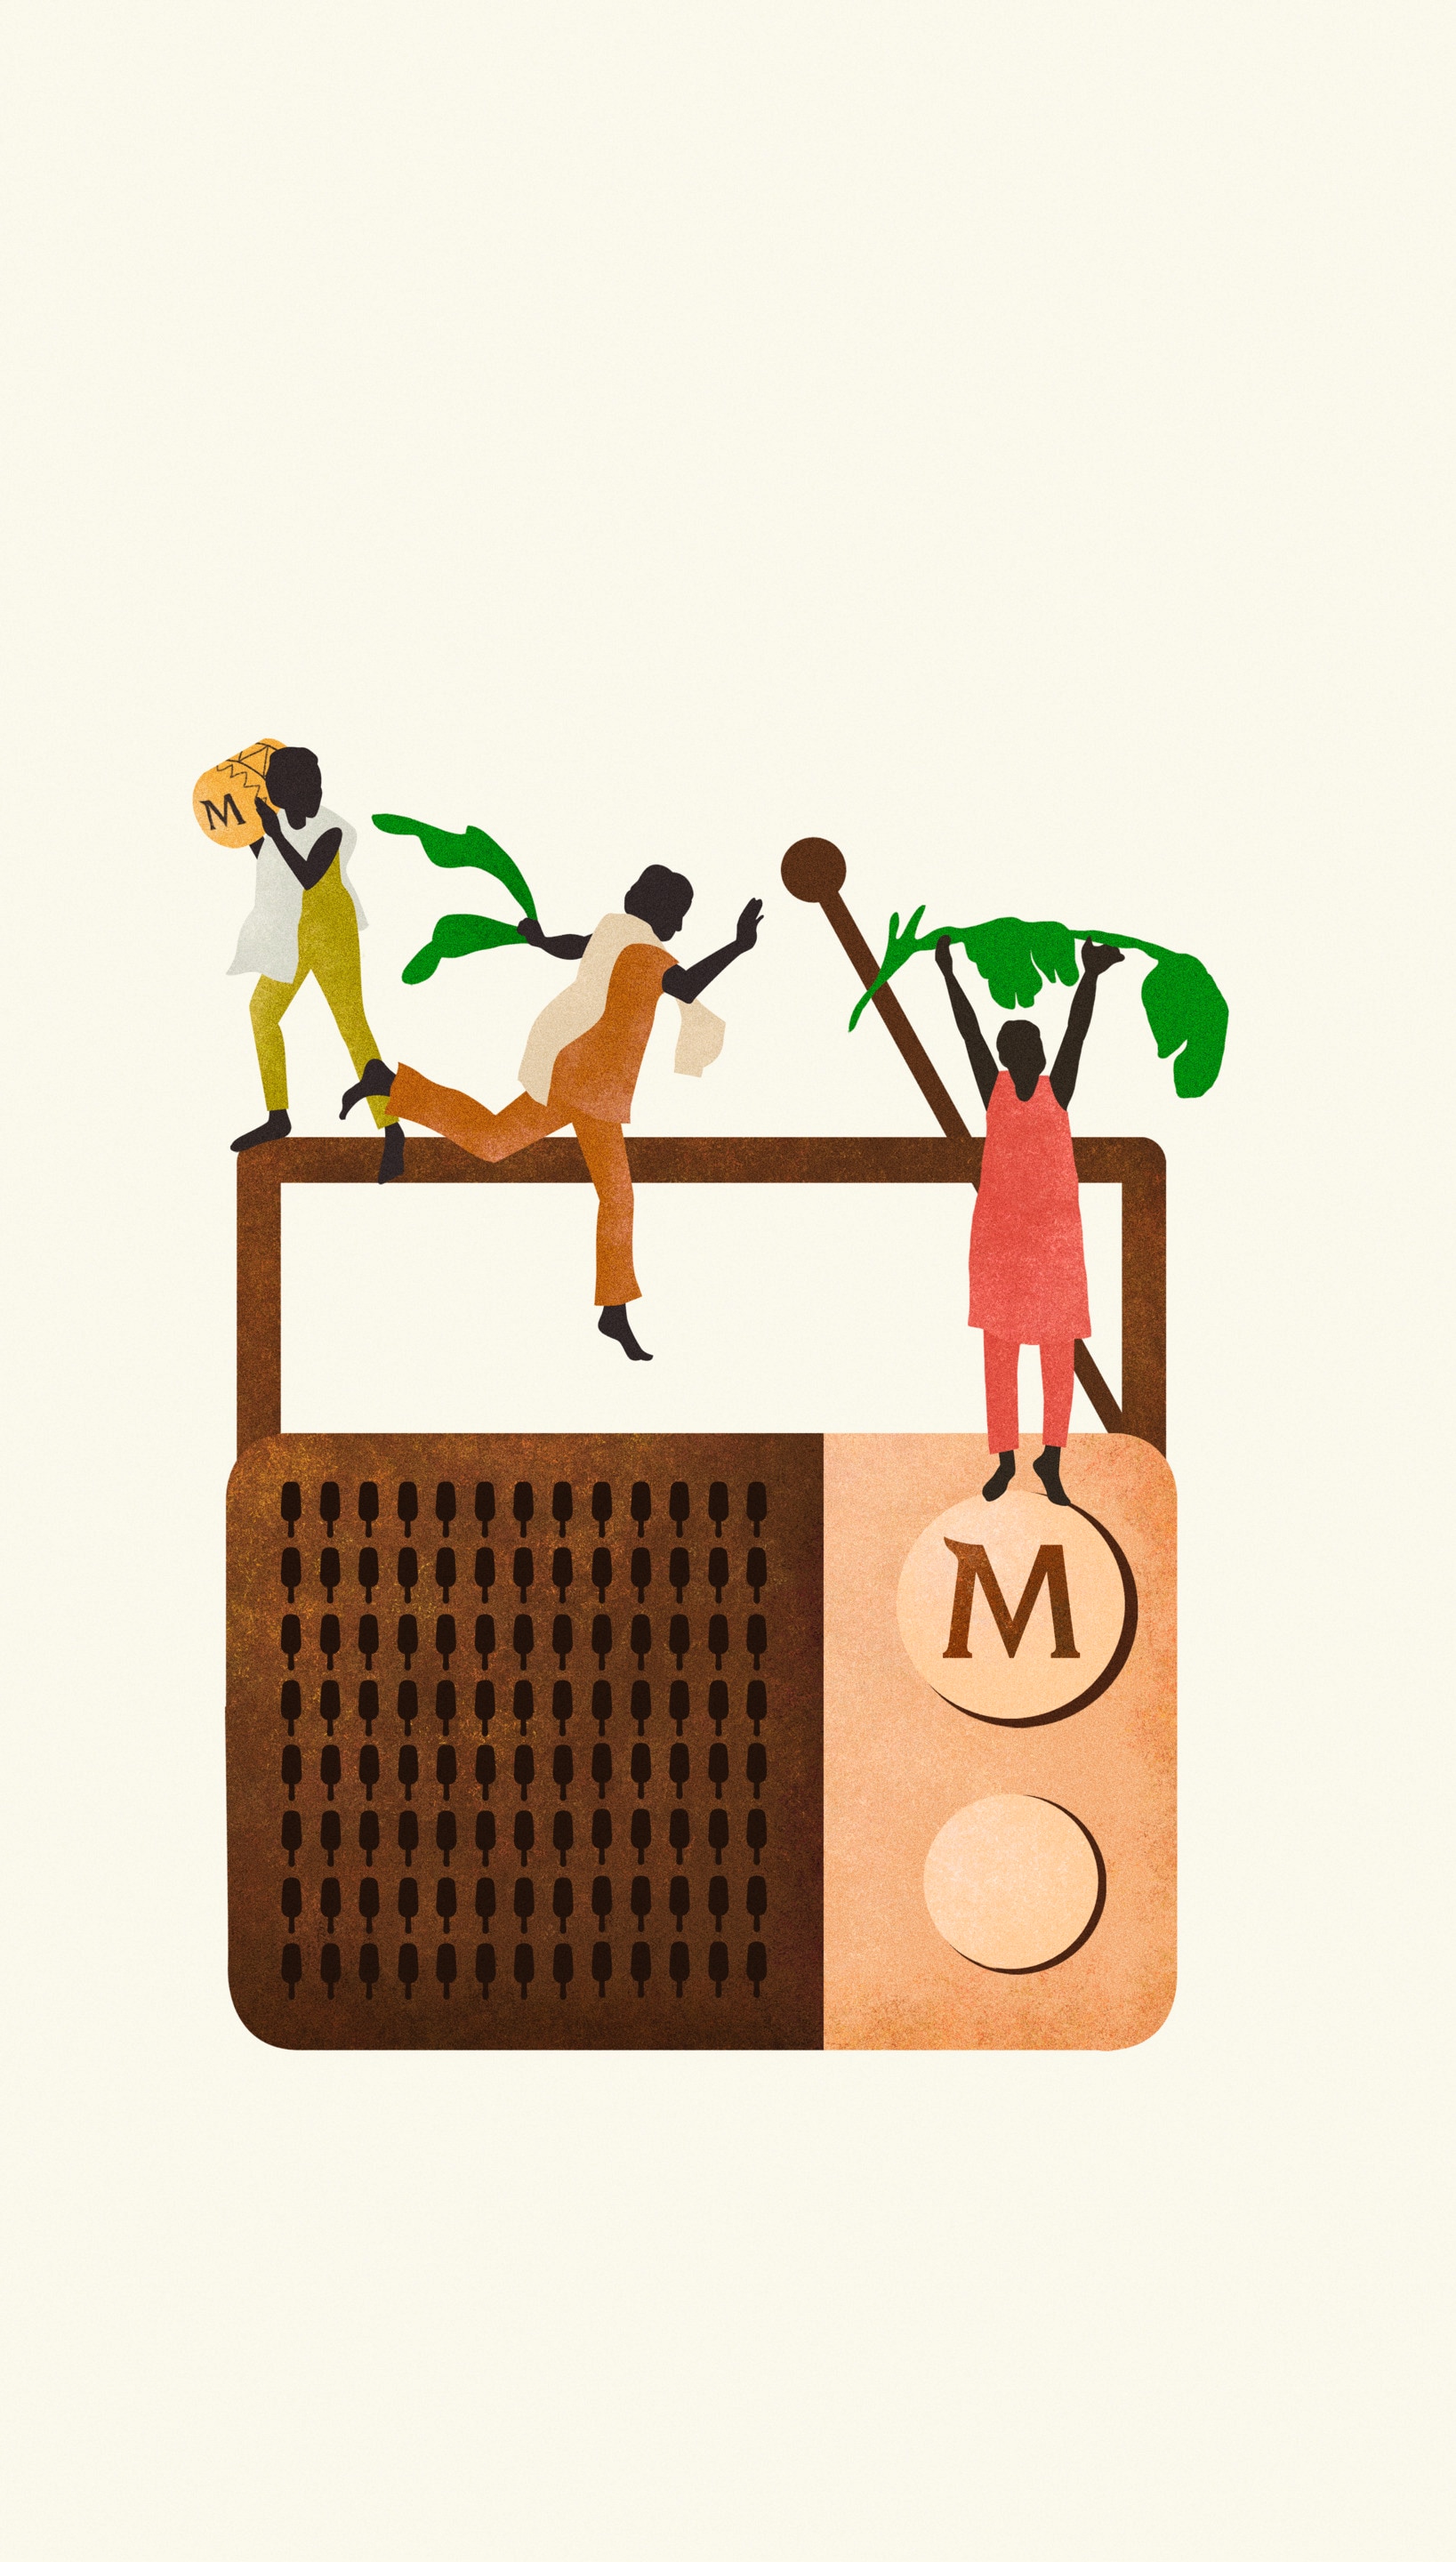 Illustrazione di una radio brandizzata Magnum con persone che ballano